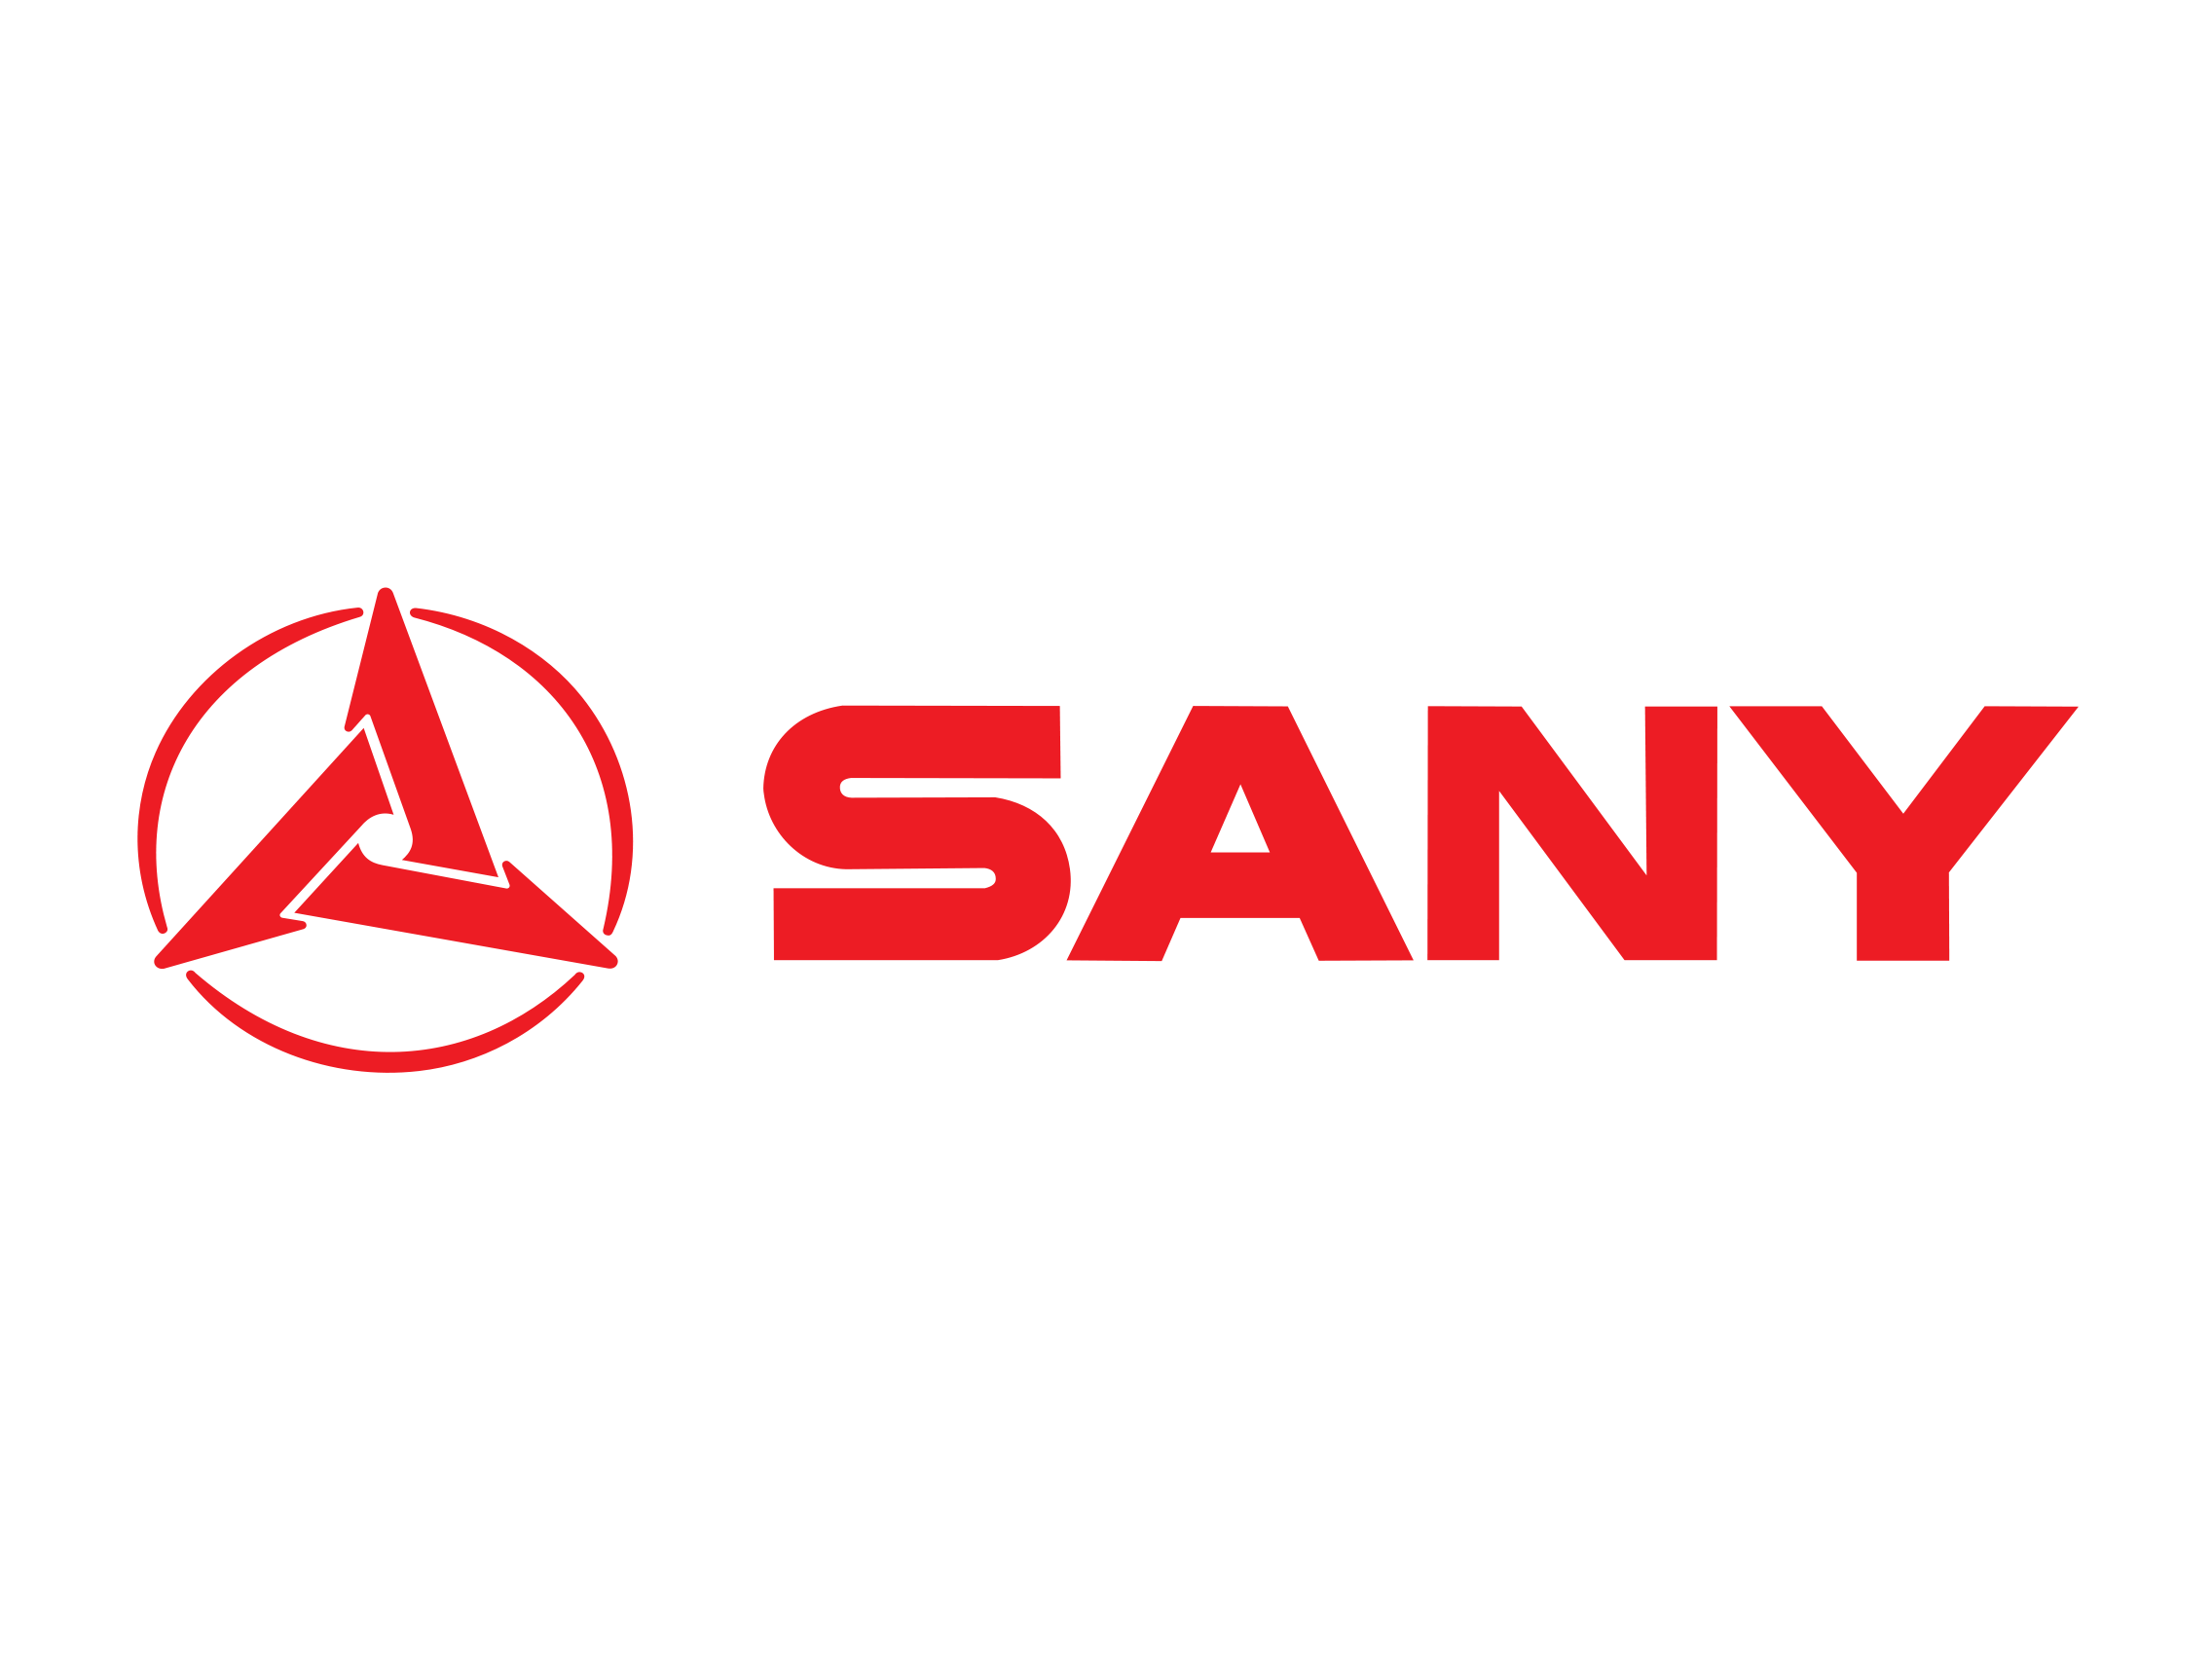 Logo Sany